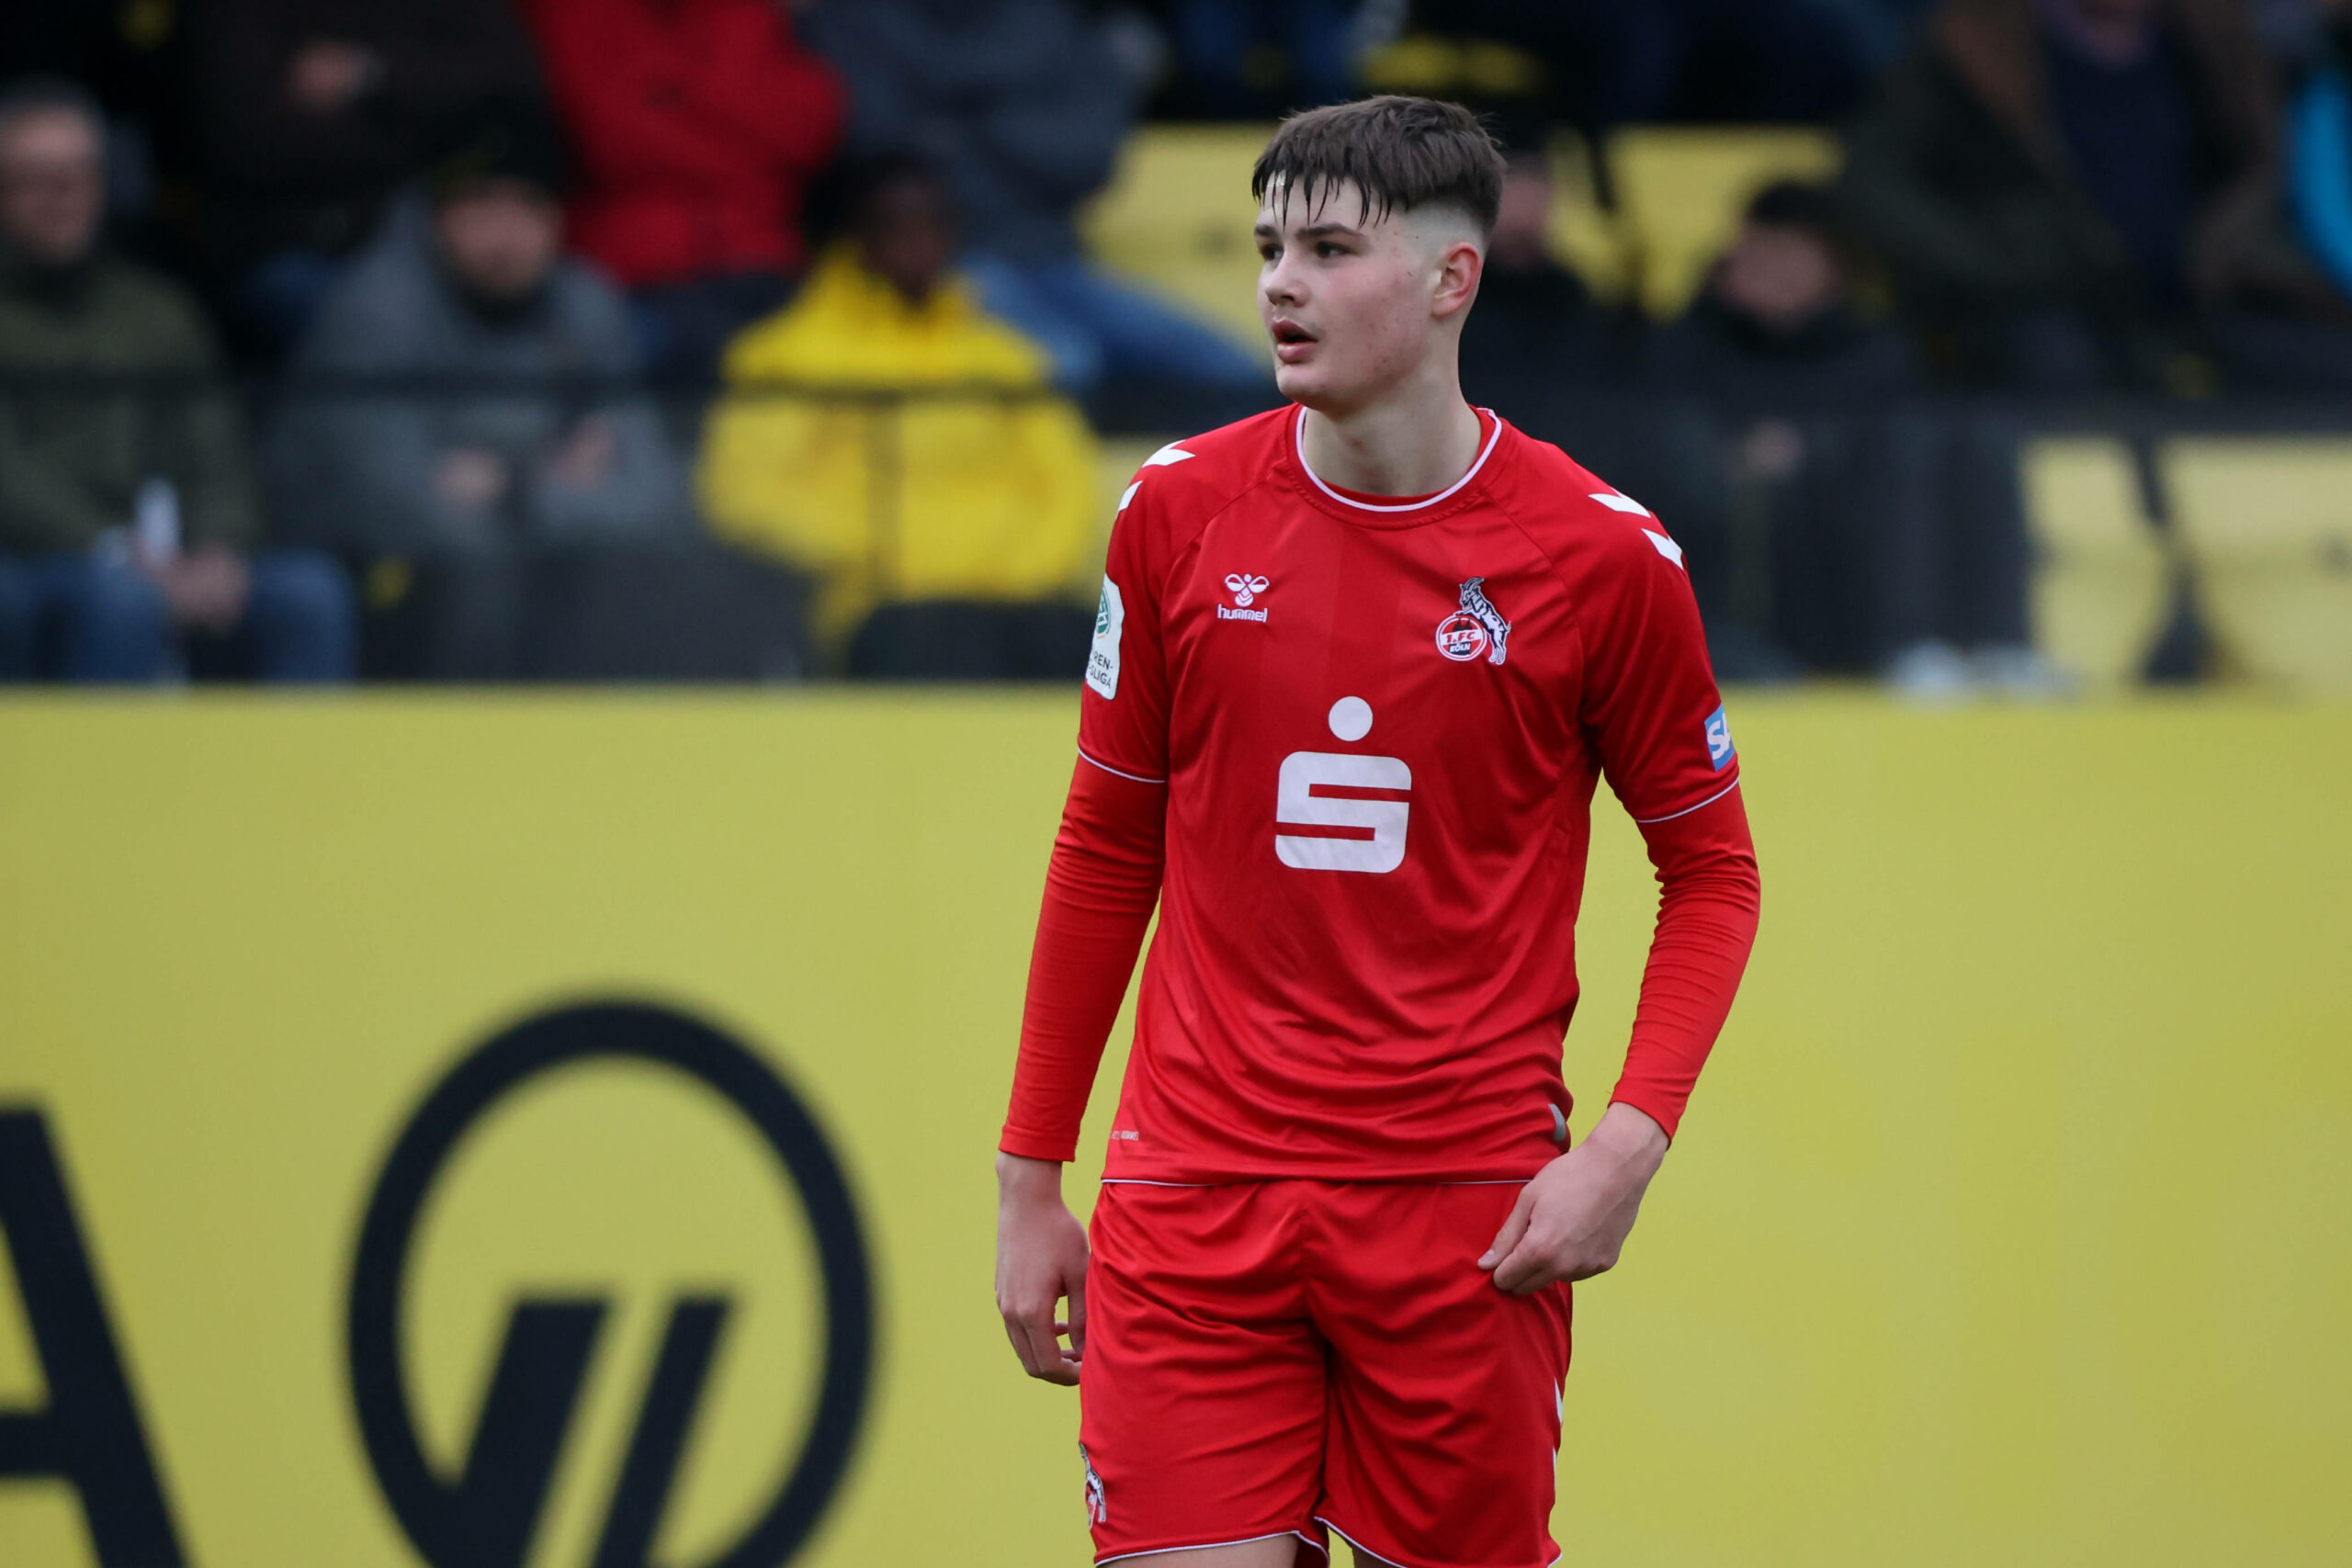 Der slowenische Stürmer Jaka Cuber Potocnik läuft für Köln in der A-Junioren-Bundesliga auf.